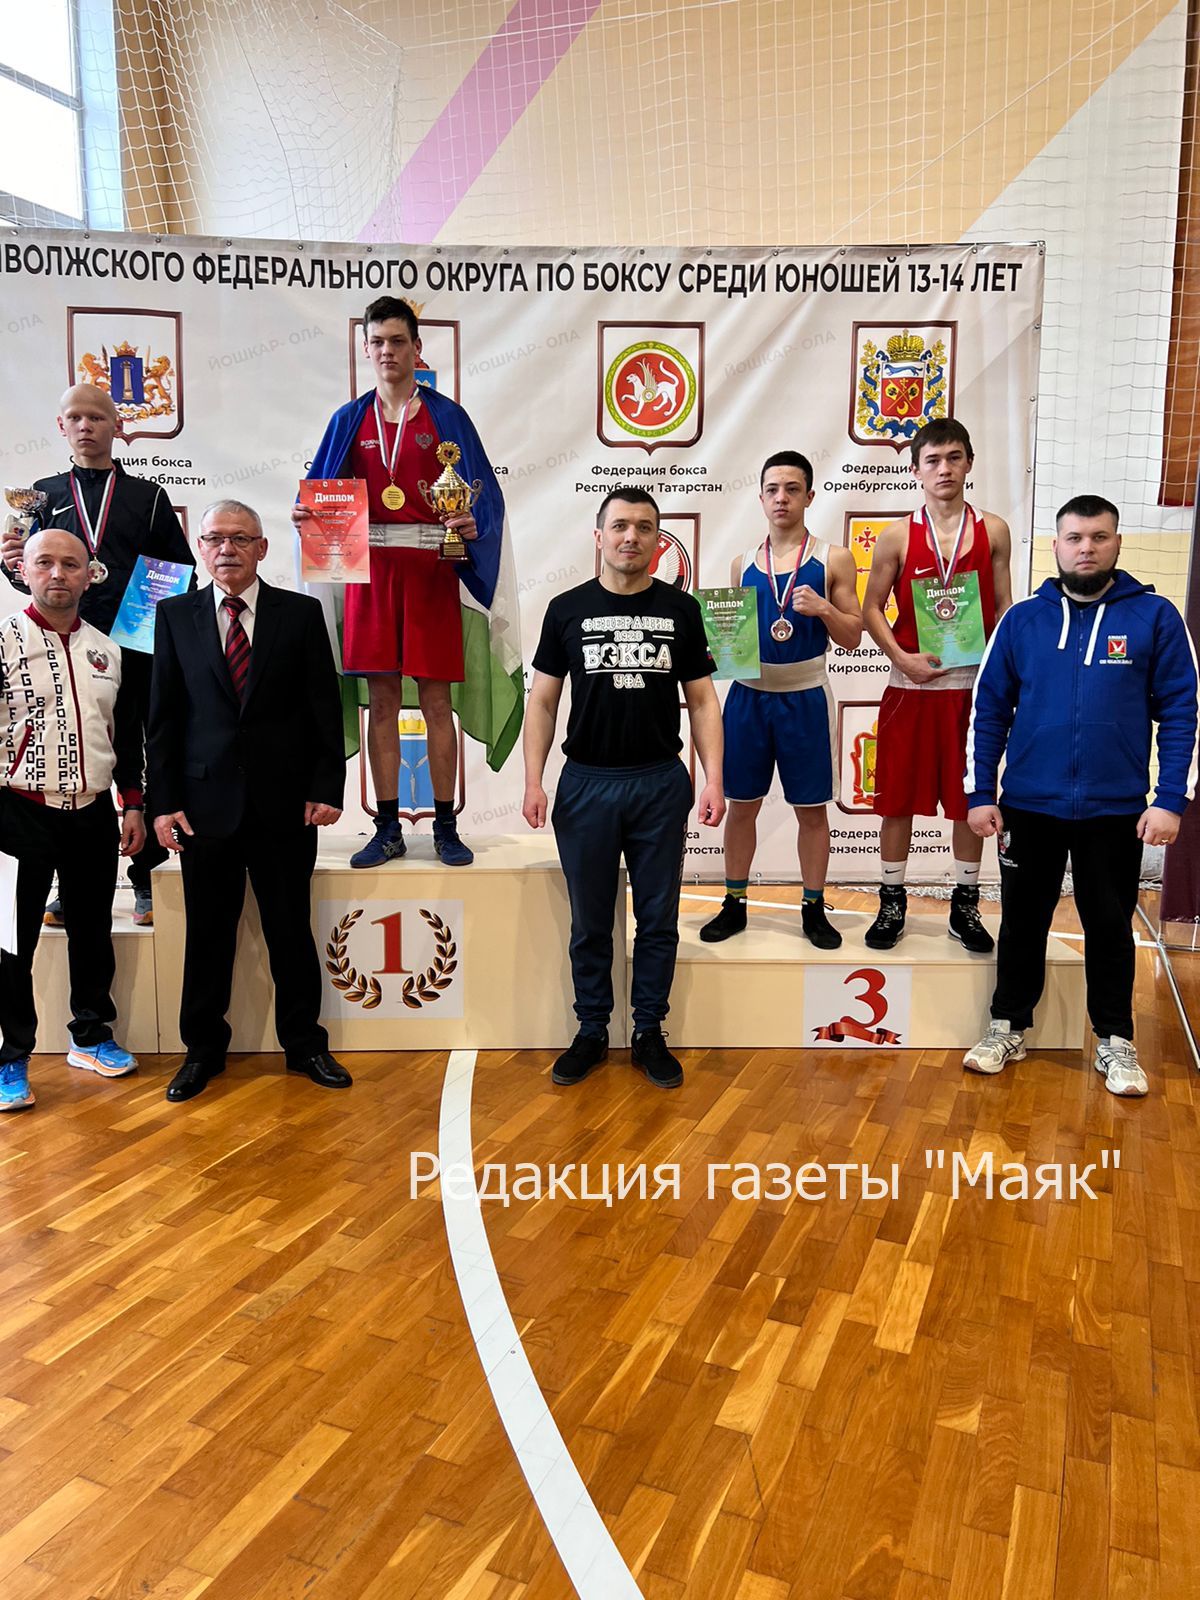 Азнакаевский спортсмен занял третье место на первенстве Поволжского федерального округа по боксу